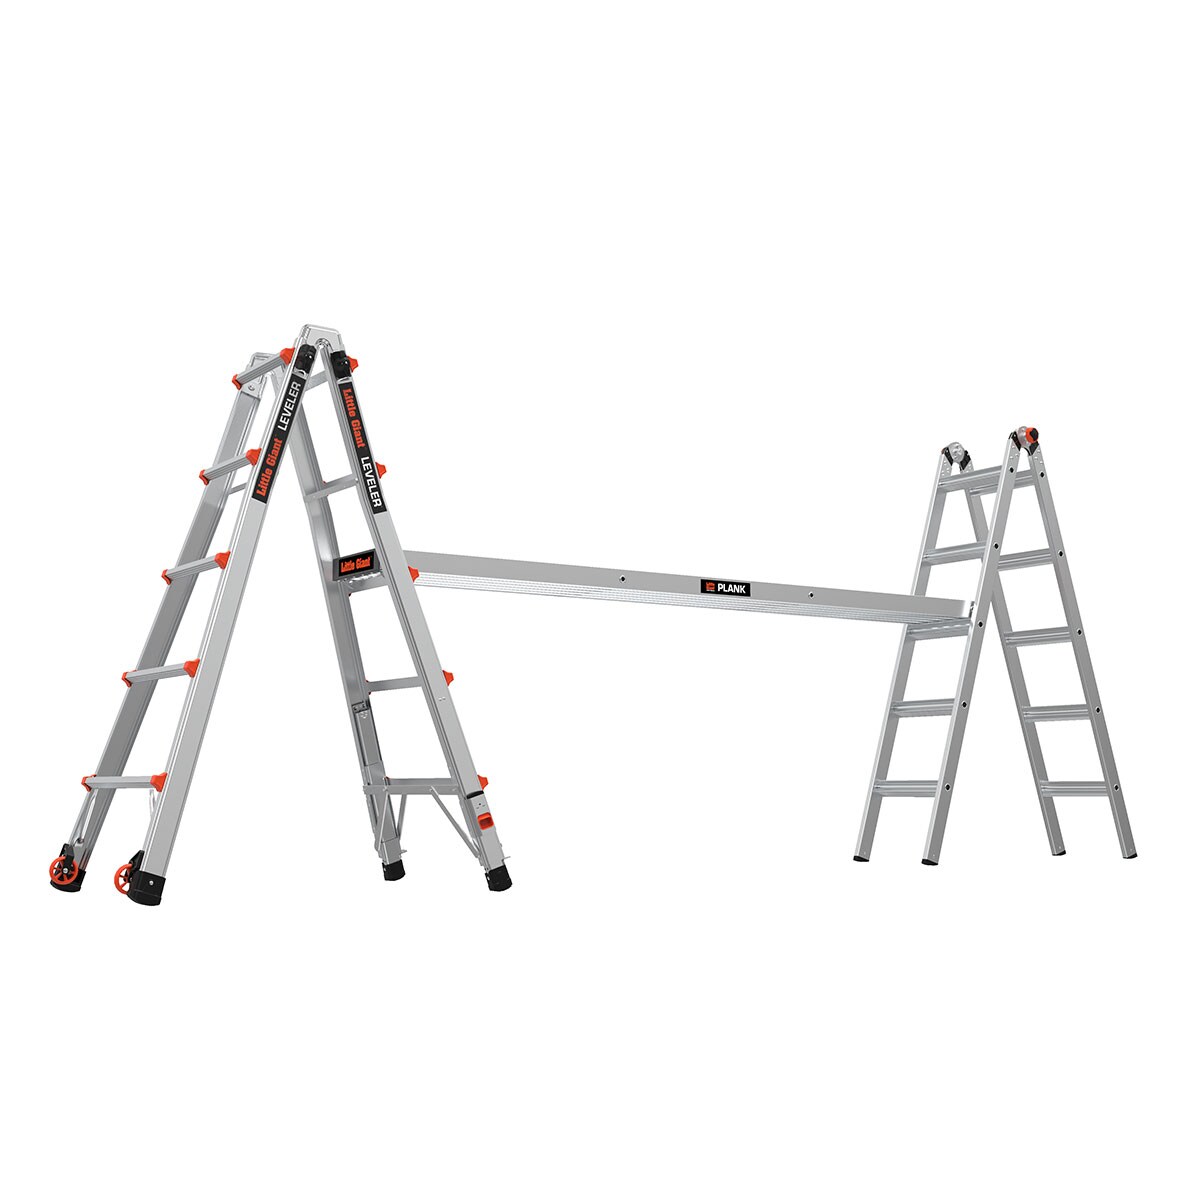 Little Giant Ladders Leveler M22 With Leg Levelers Aluminum 22 Ft Reach